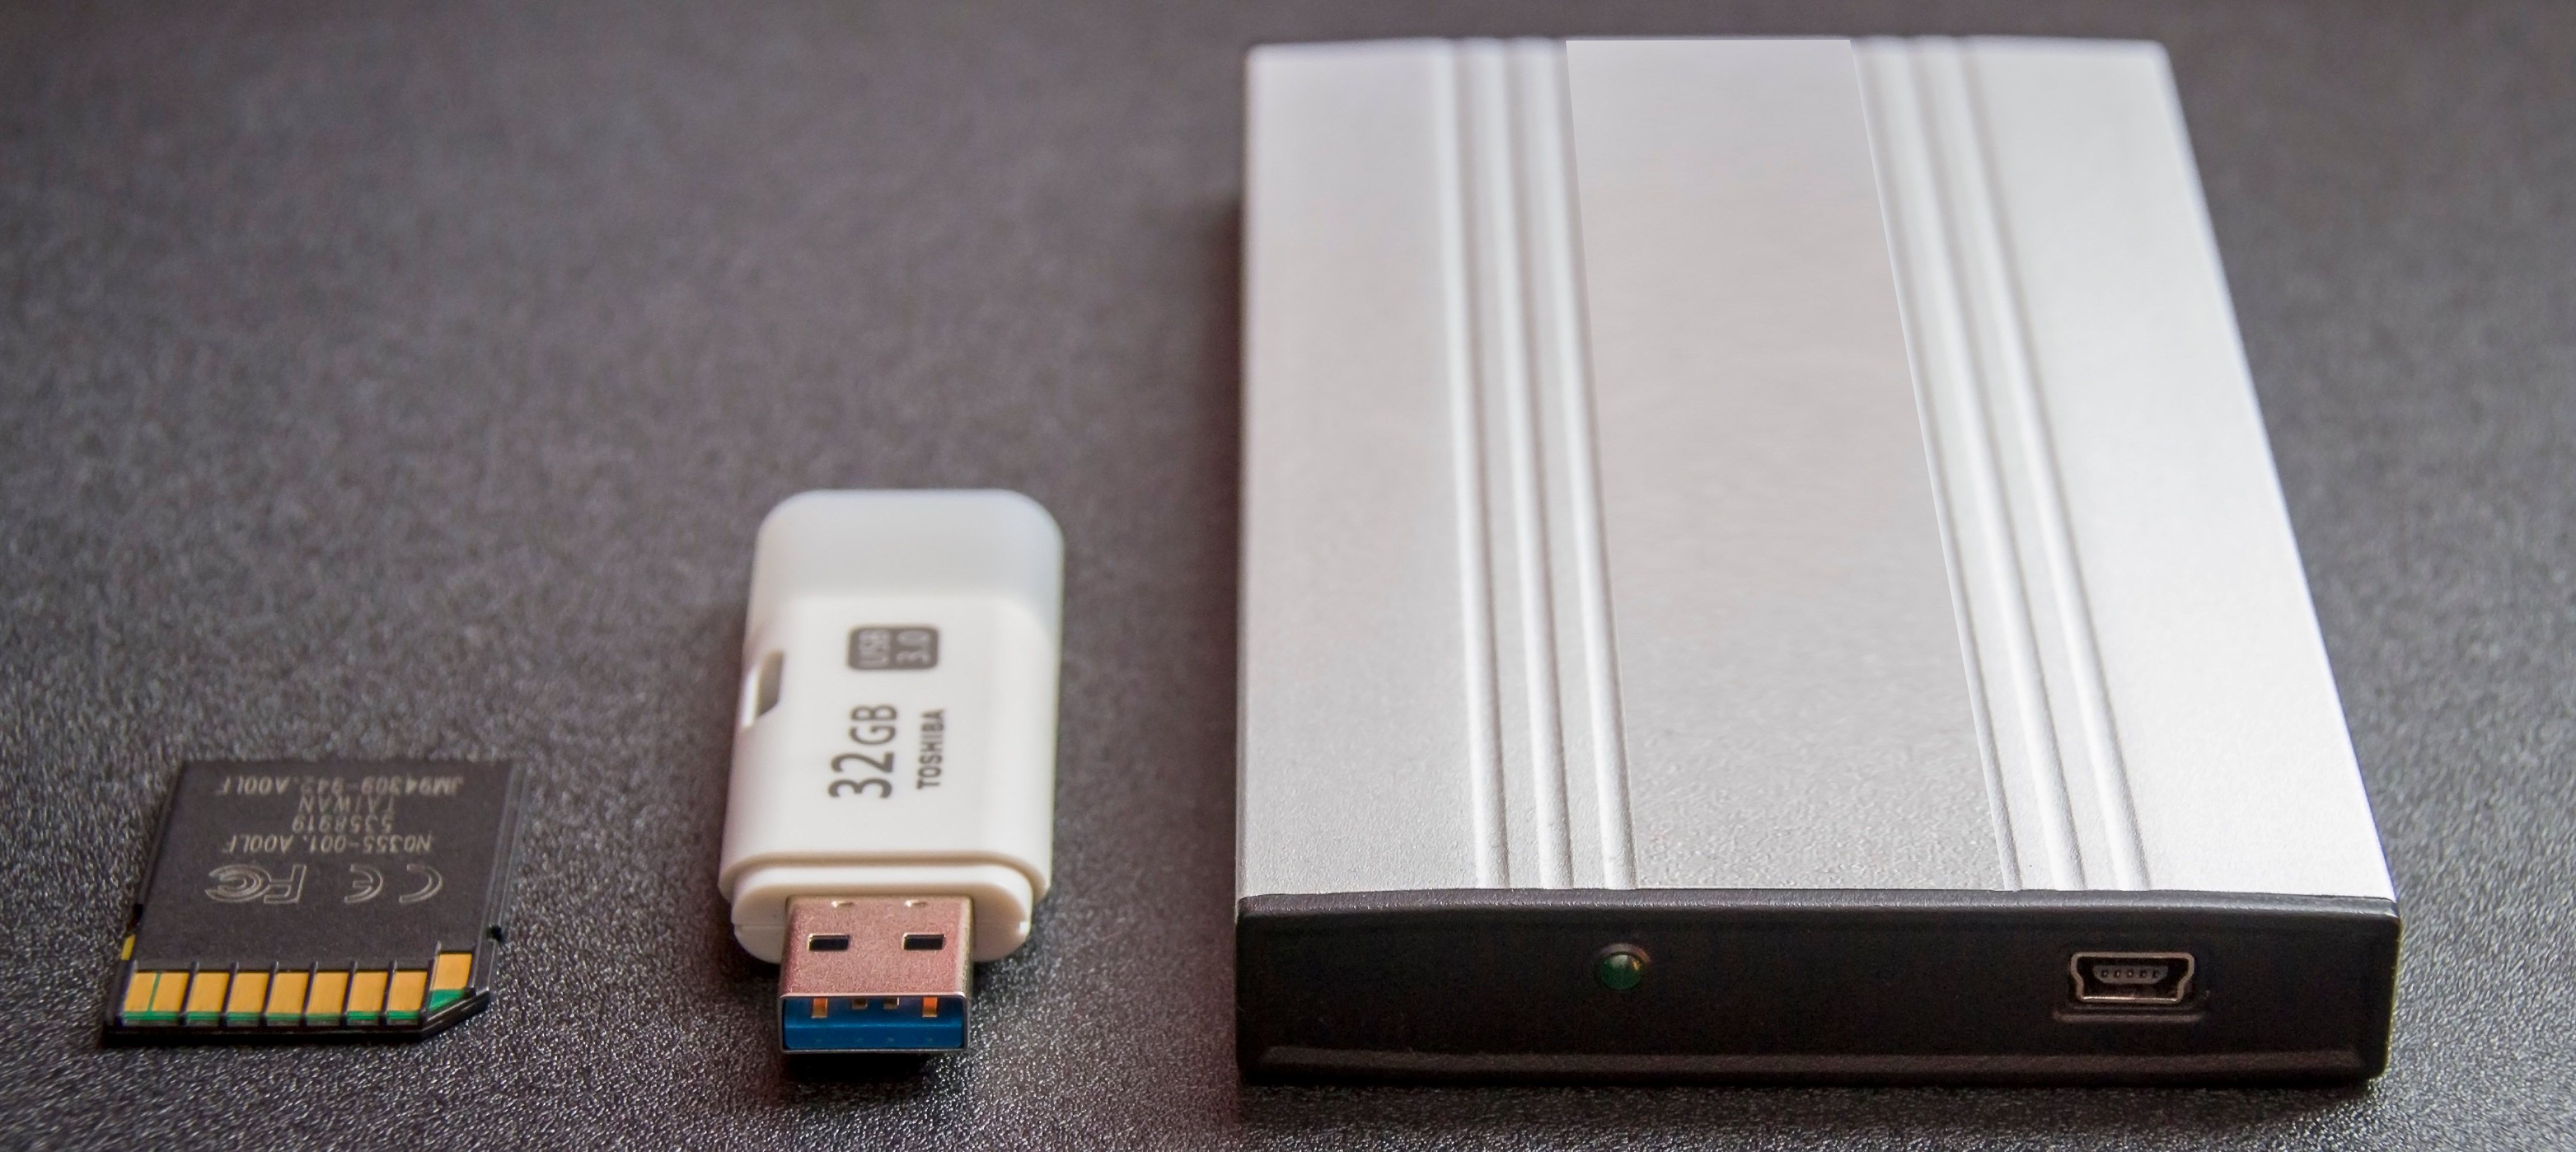 Как восстановить данные с USB-накопителя..